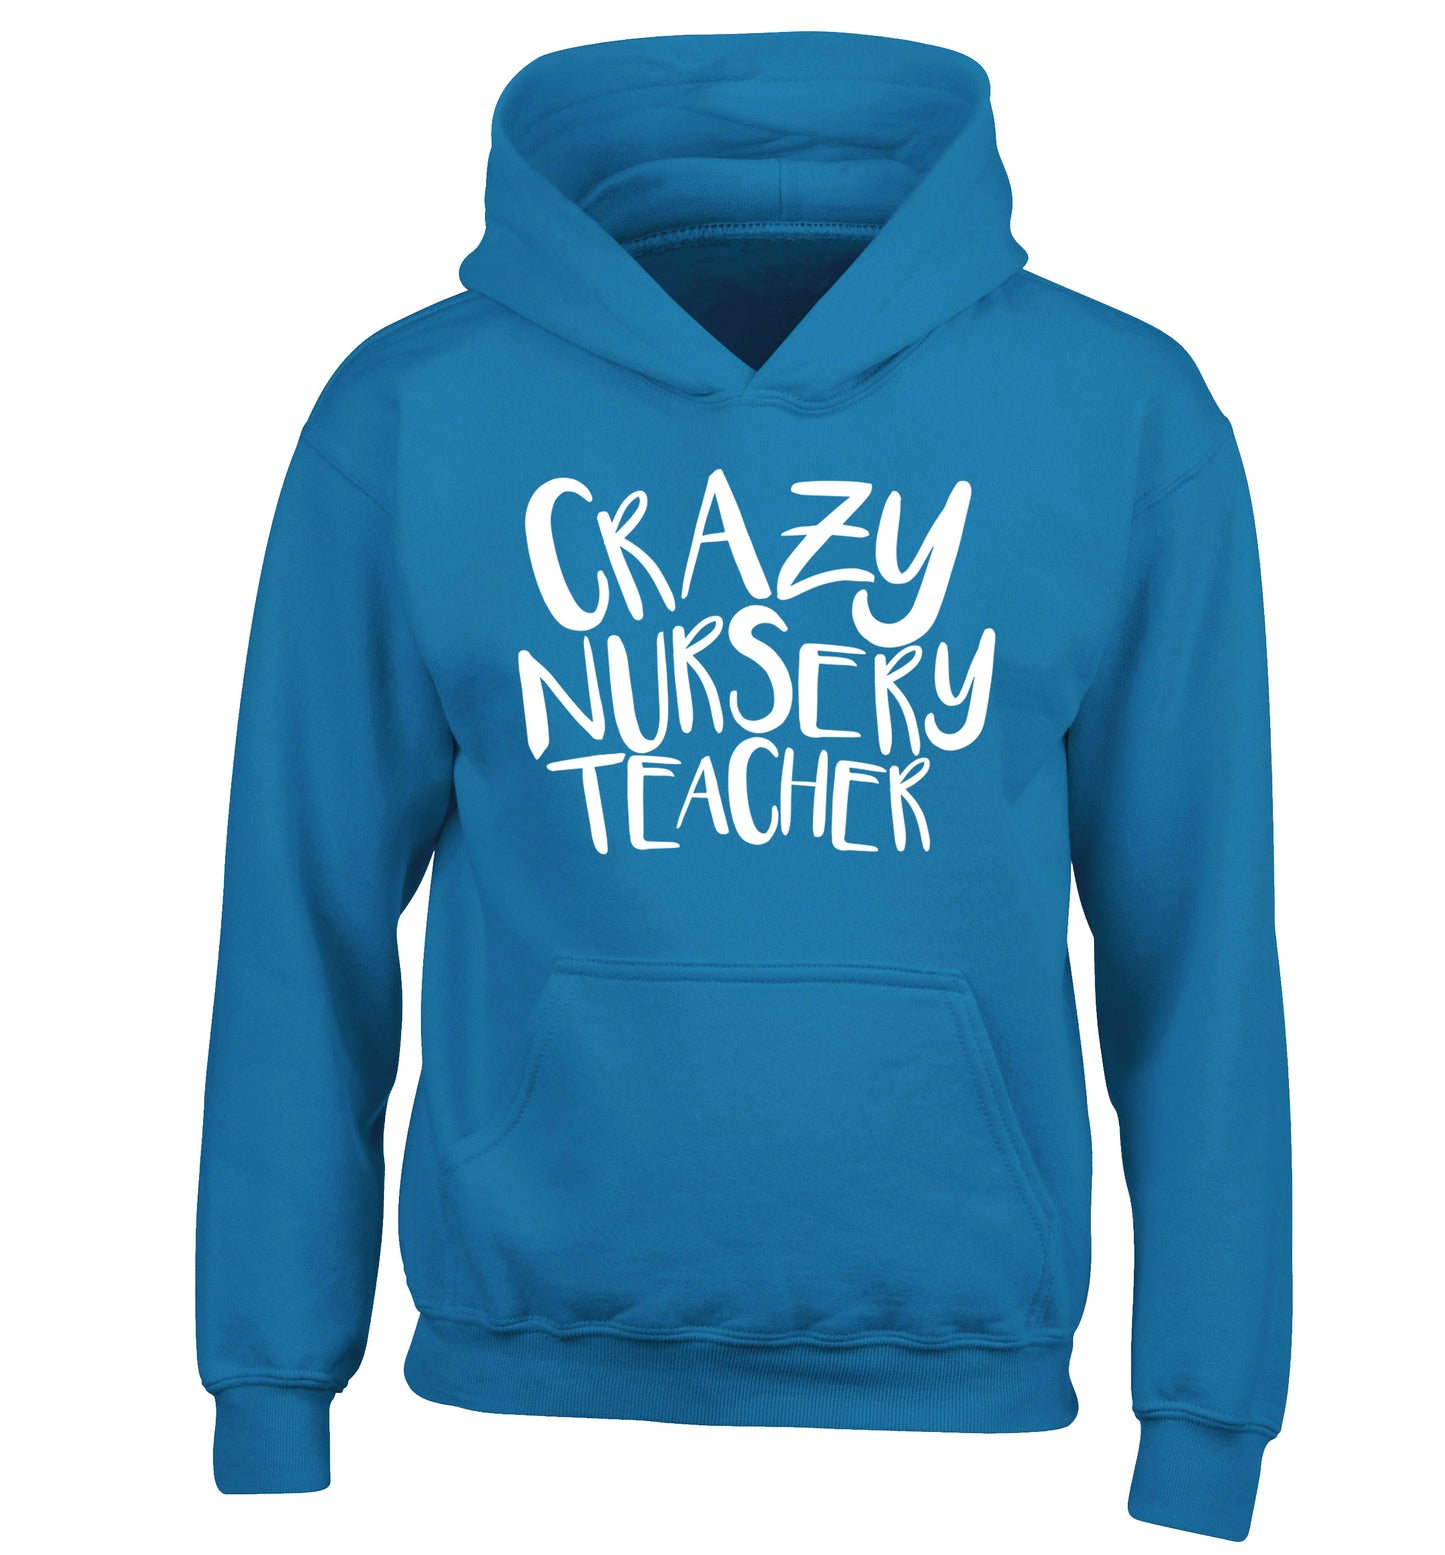 Crazy nursery teacher children's blue hoodie 12-13 Years